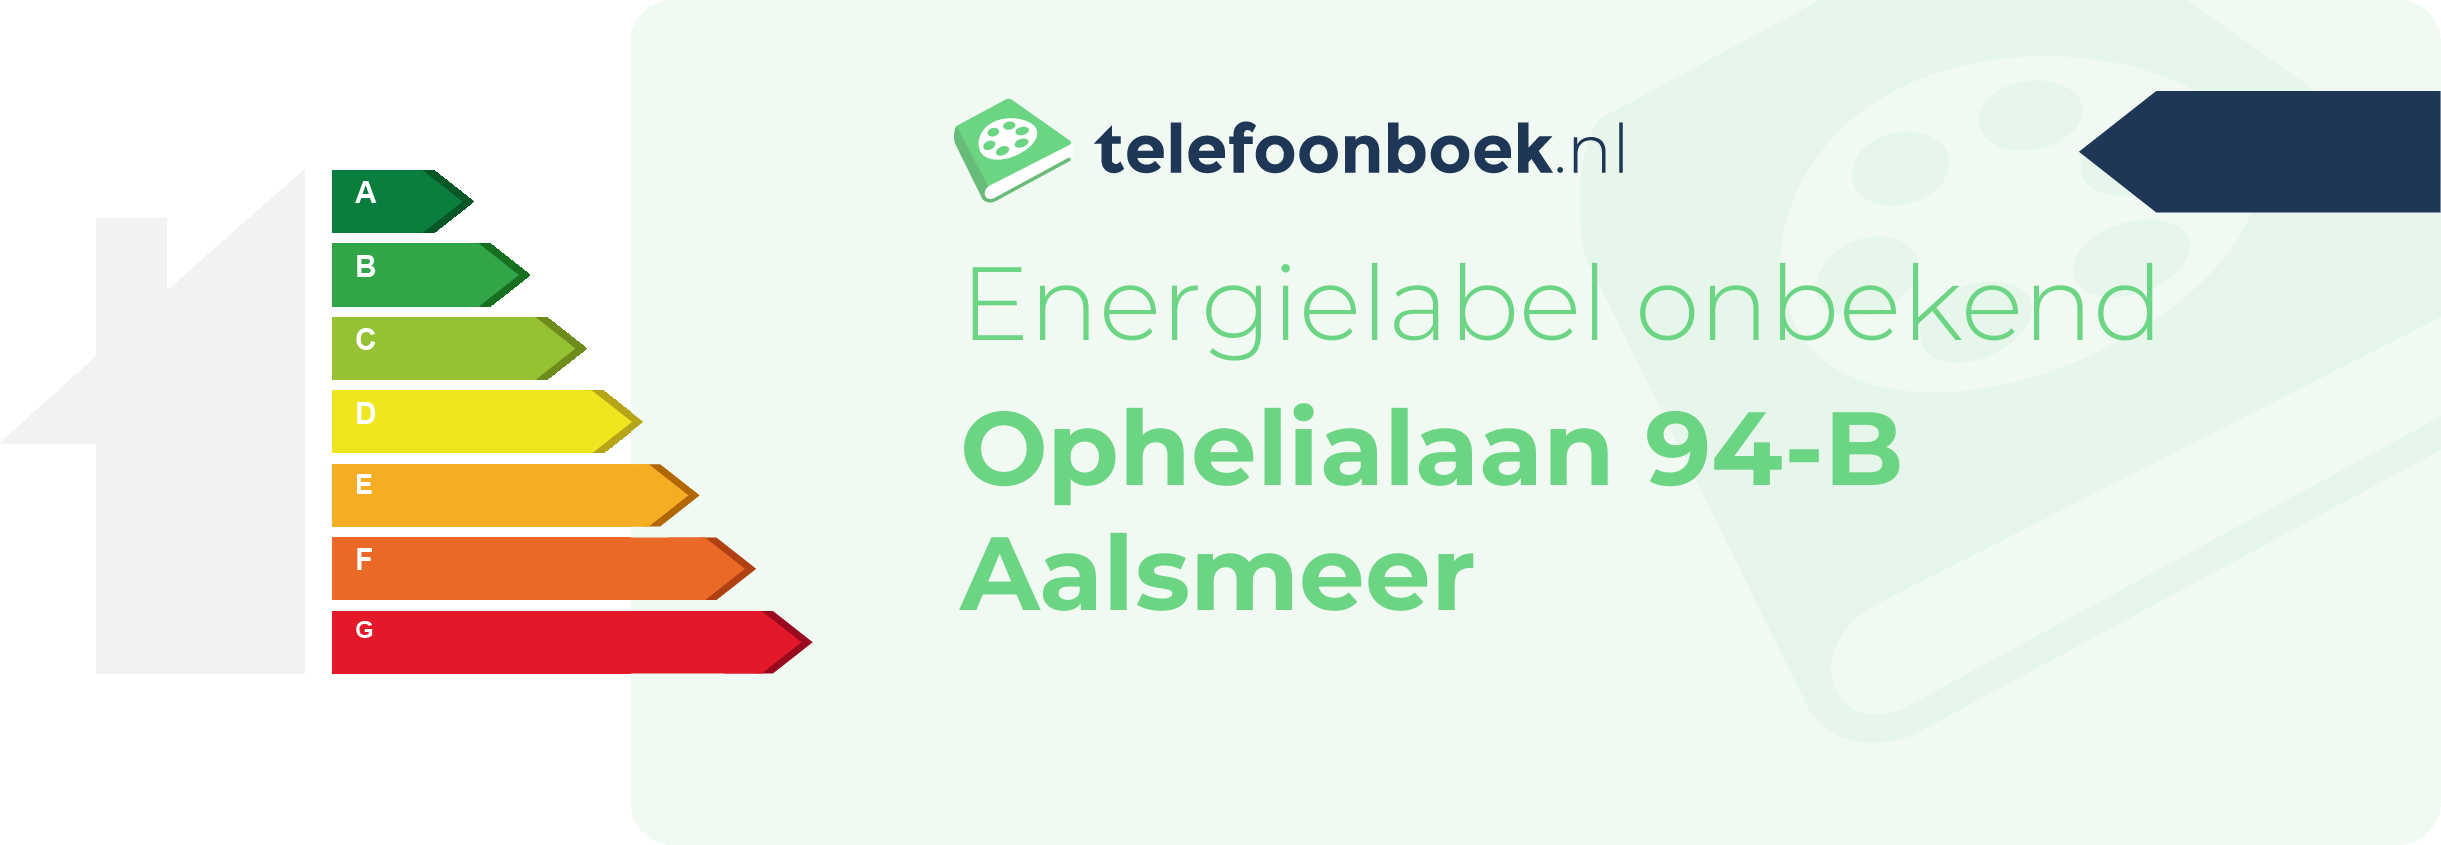 Energielabel Ophelialaan 94-B Aalsmeer